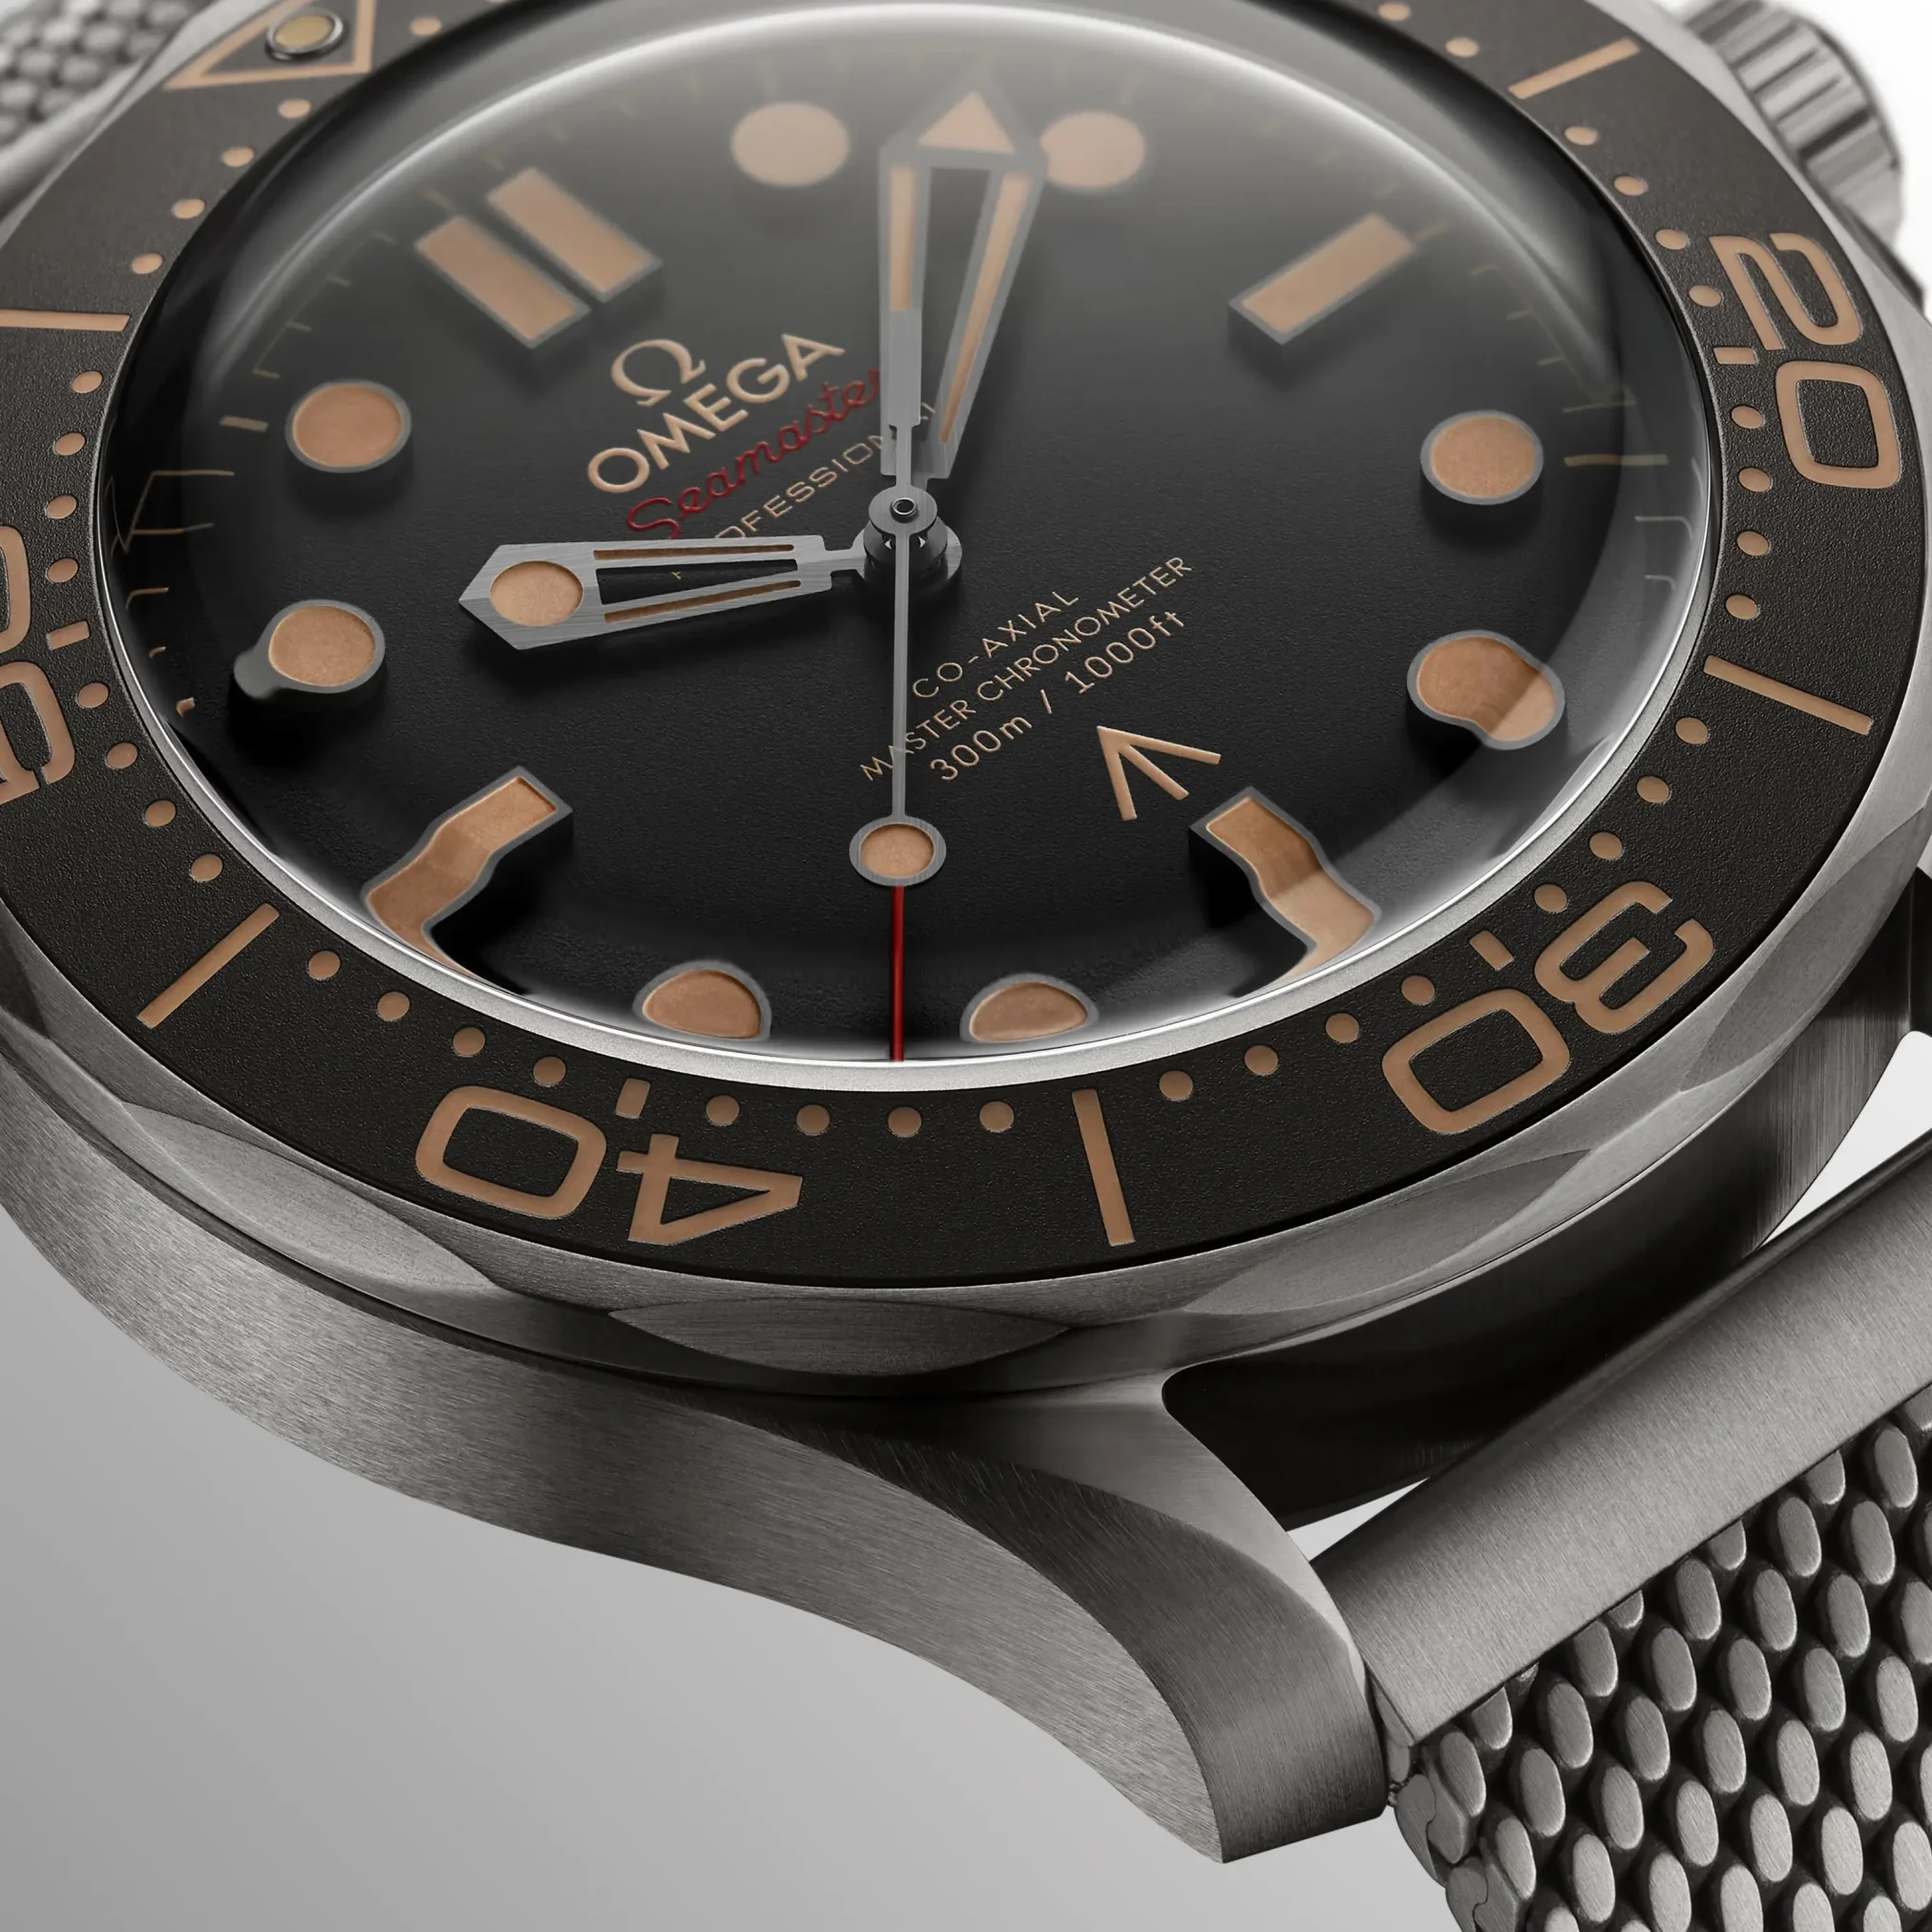 Đồng hồ Omega Seamaster Diver 300M "No Time To Die" 007 Limited 210.90.42.20.01.001 mặt số màu xám. Dây đeo bằng titanium. Thân vỏ bằng titanium.